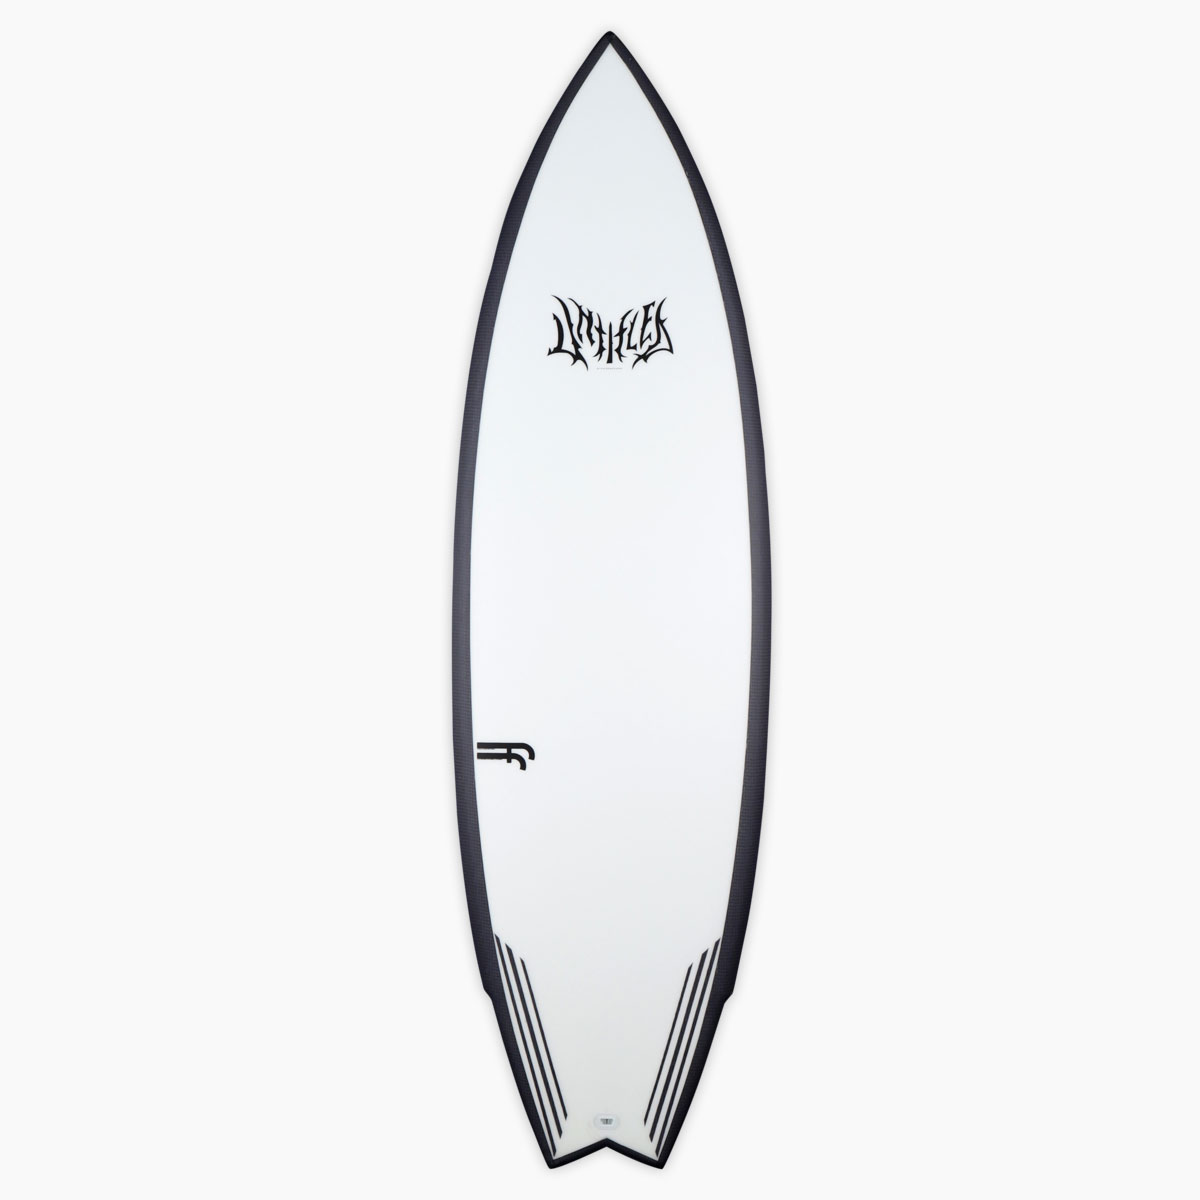 SurfBoardNet / サーフボード ブランド:HAYDEN SHAPES